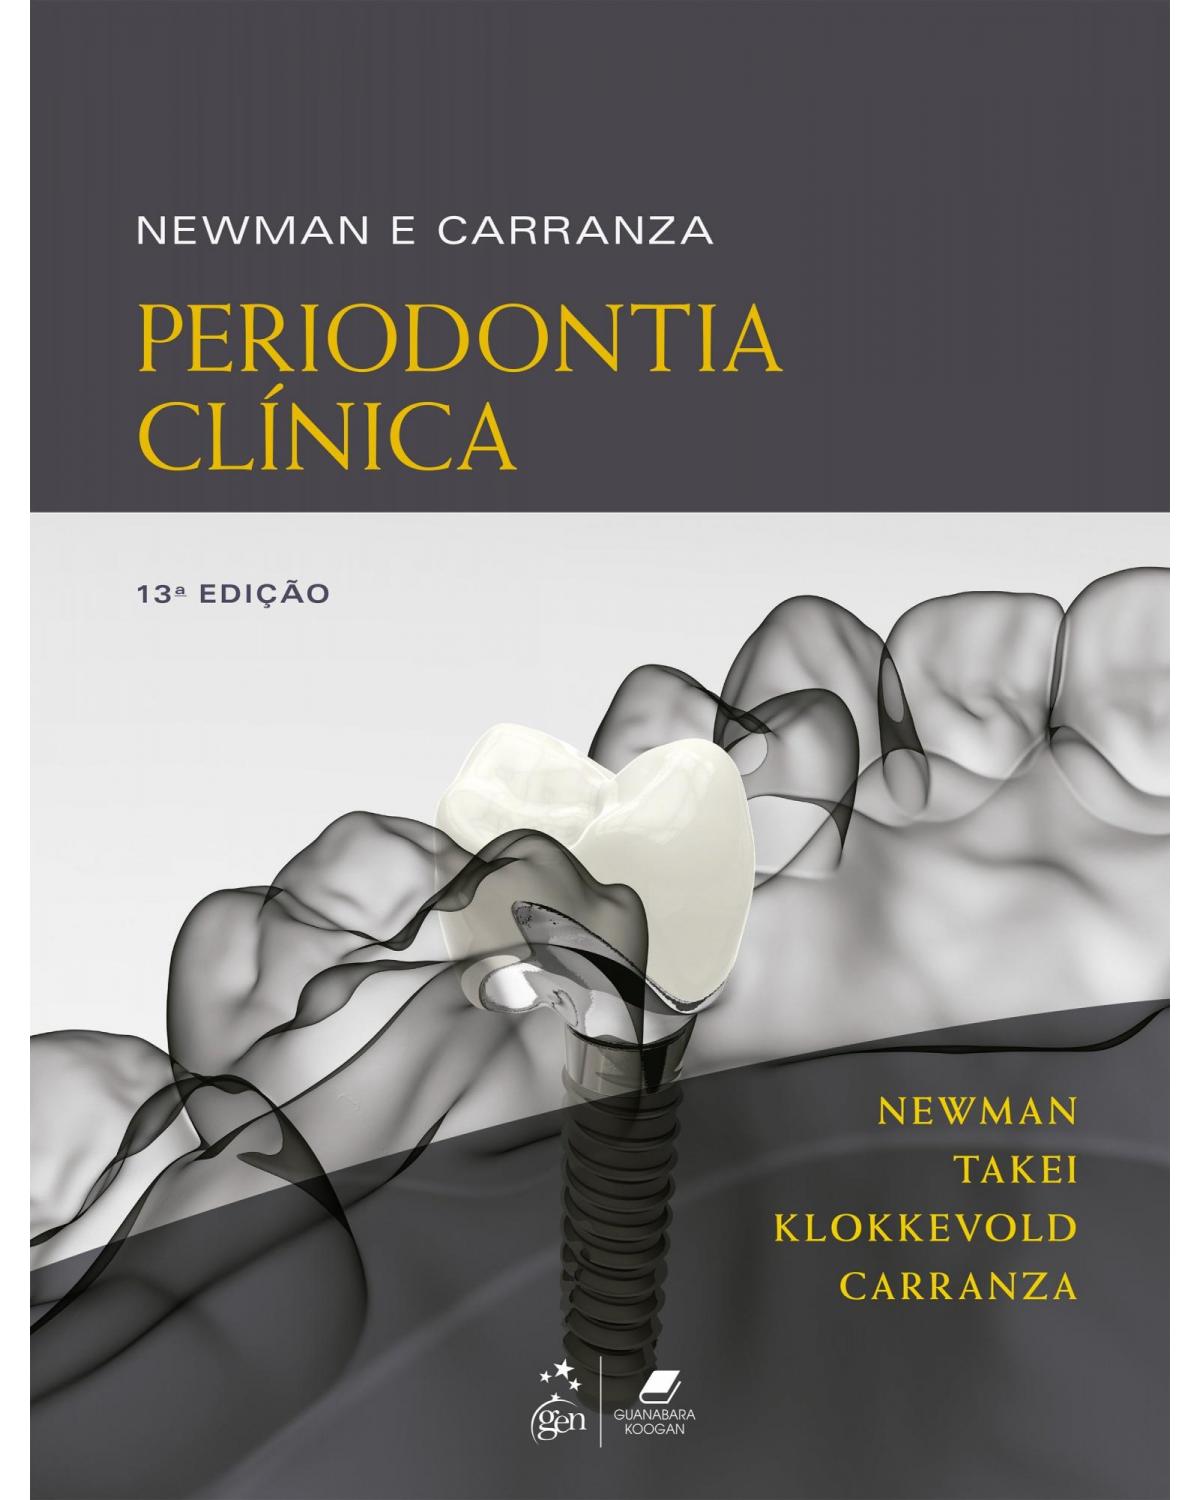 Newman e Carranza - Periodontia clínica - 13ª Edição | 2020